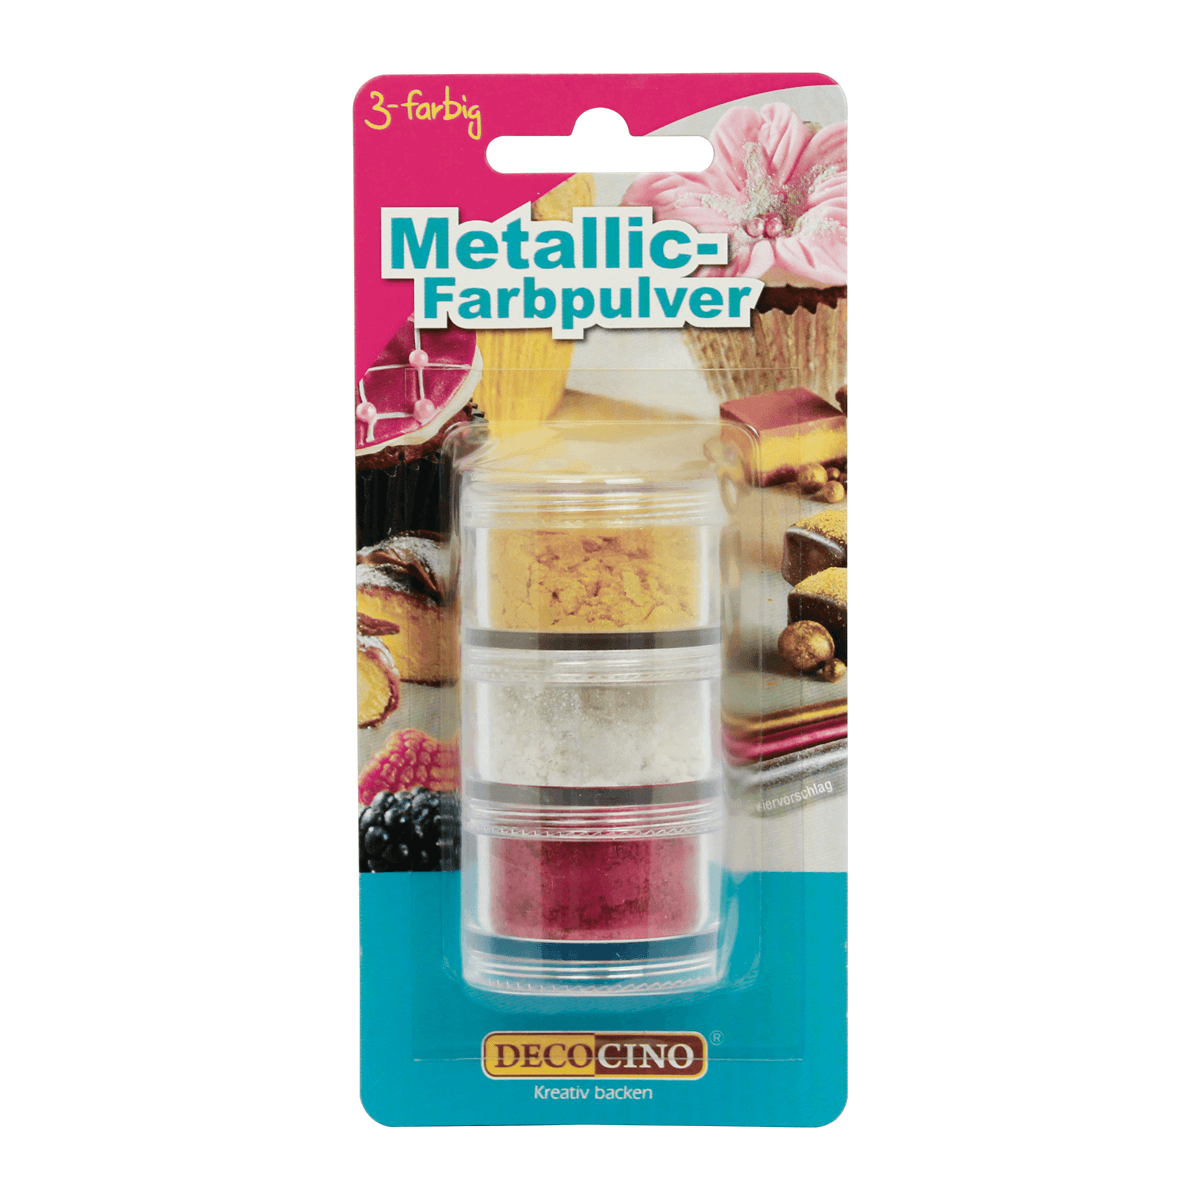 Metallic-Farbpulver Set gold/silber/rot